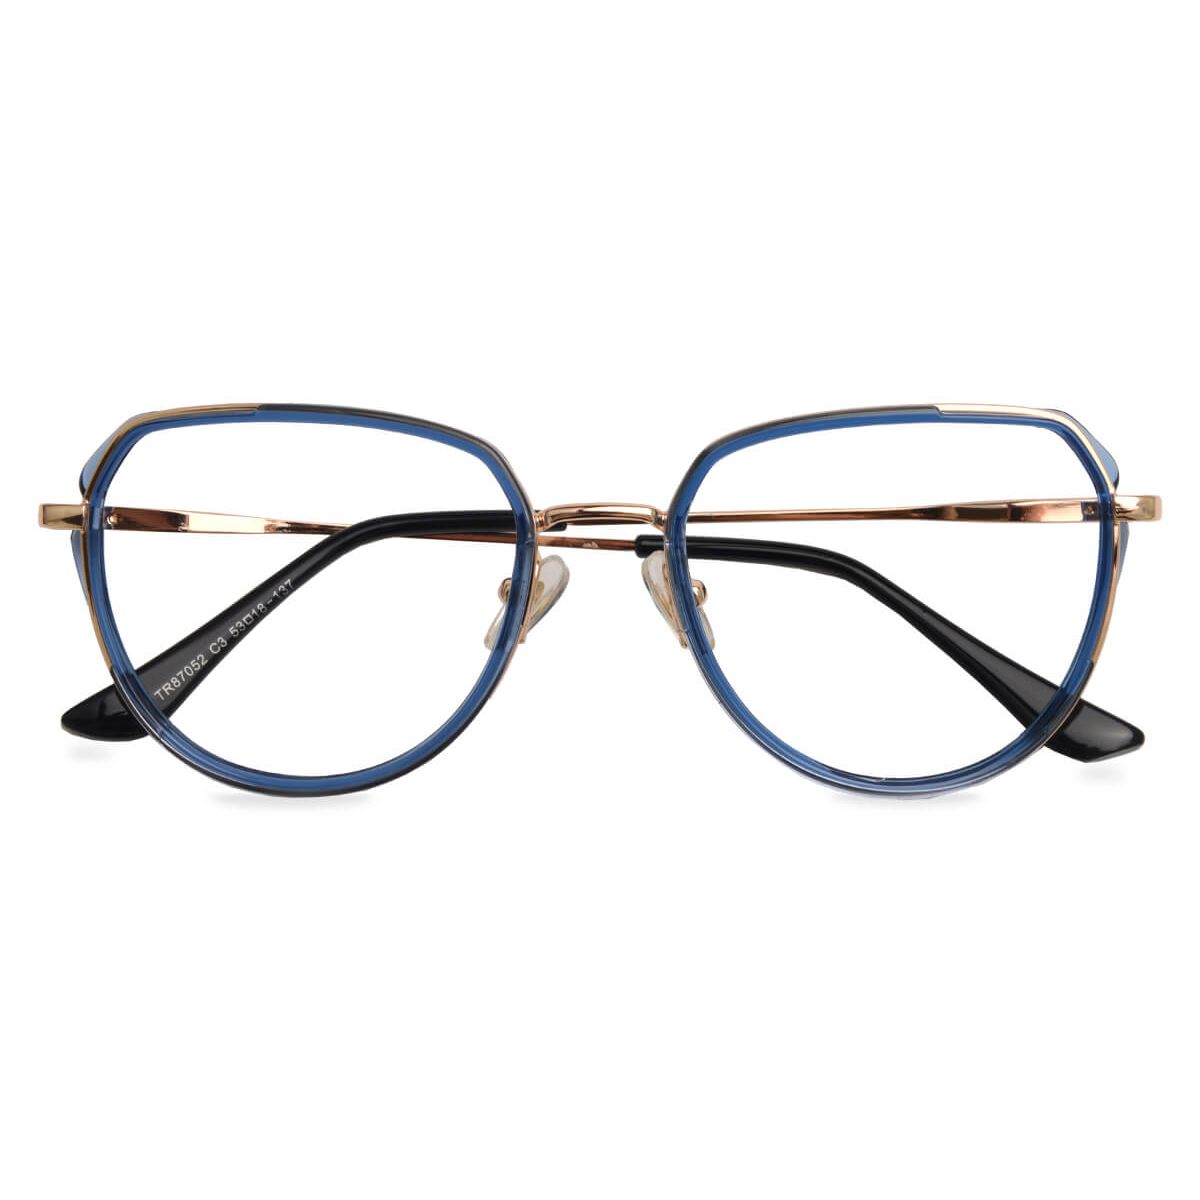 87052 Oval Blue Eyeglasses Frames | Leoptique